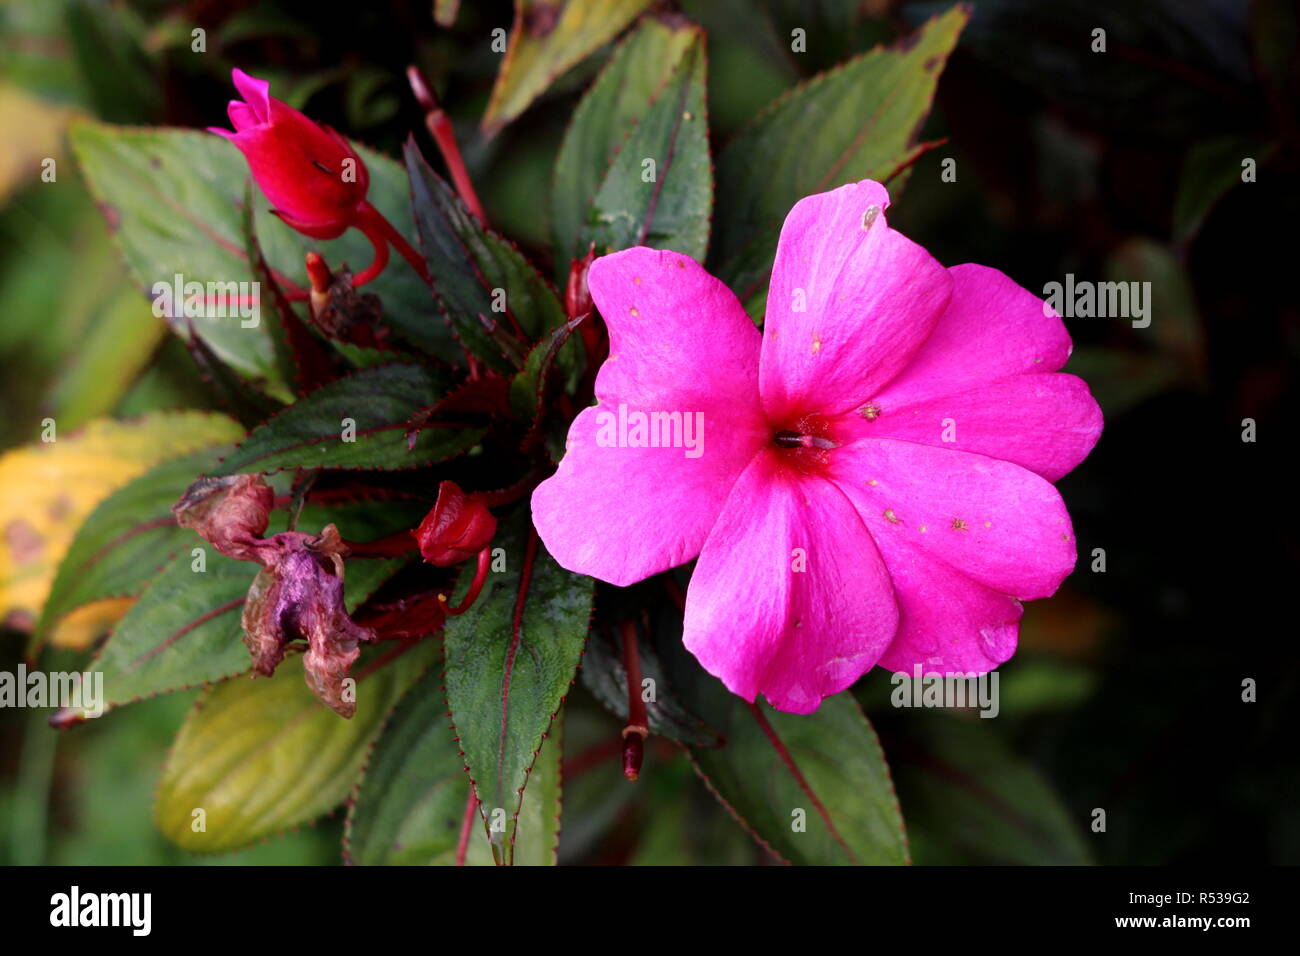 Nuova Guinea impatiens o Impatiens hawkeri fioritura delle piante con apertura singola grande fiore rosa scuro circondato di fiori Chiusa con boccioli di fiori Foto Stock